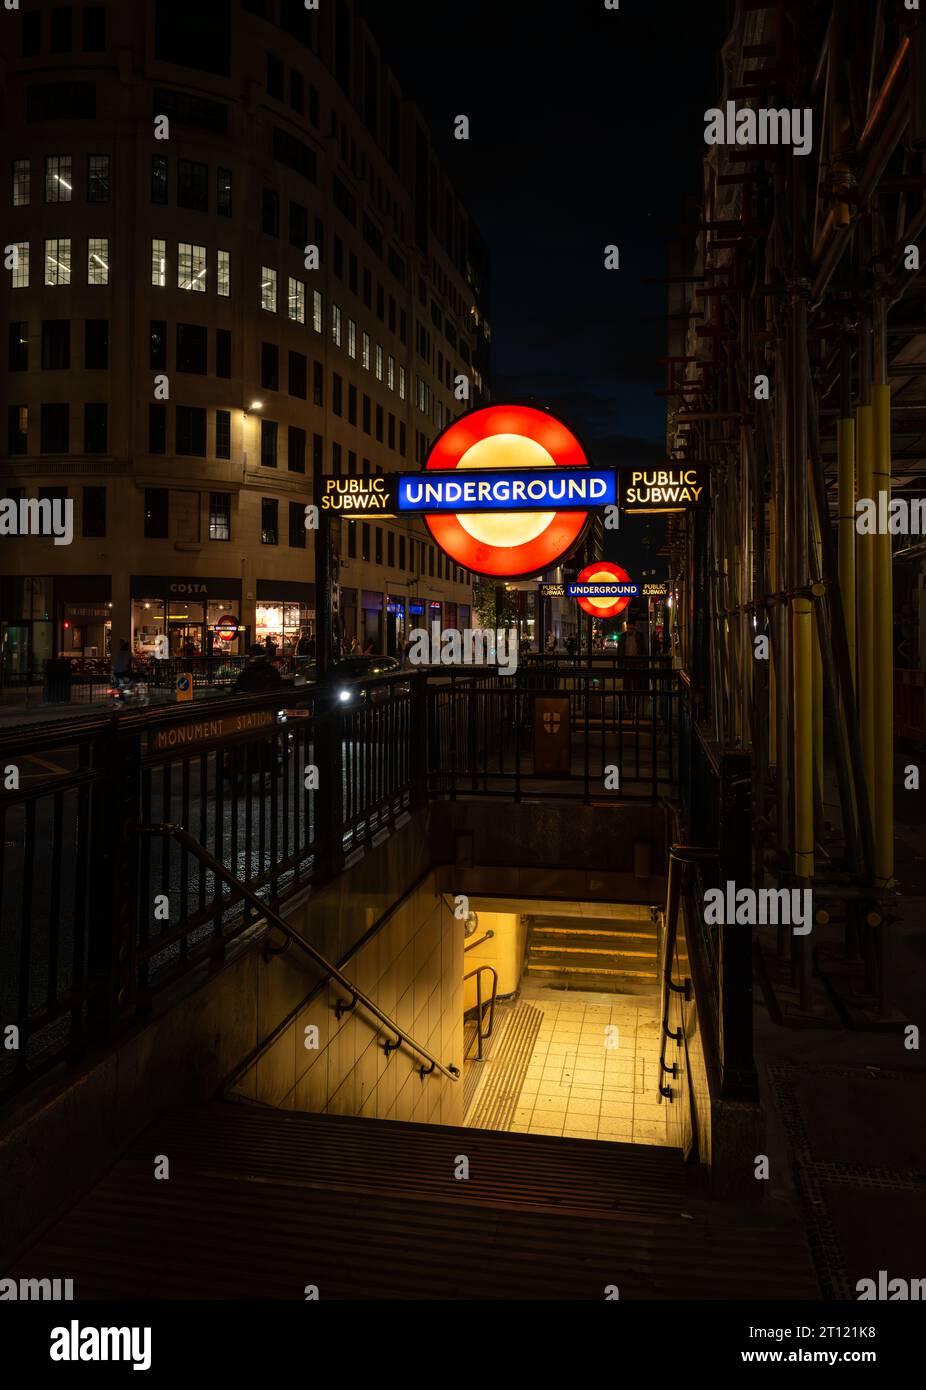 London, UK: Entrance to Monument tube station at night with illuminated London Underground sign. Stock Photo